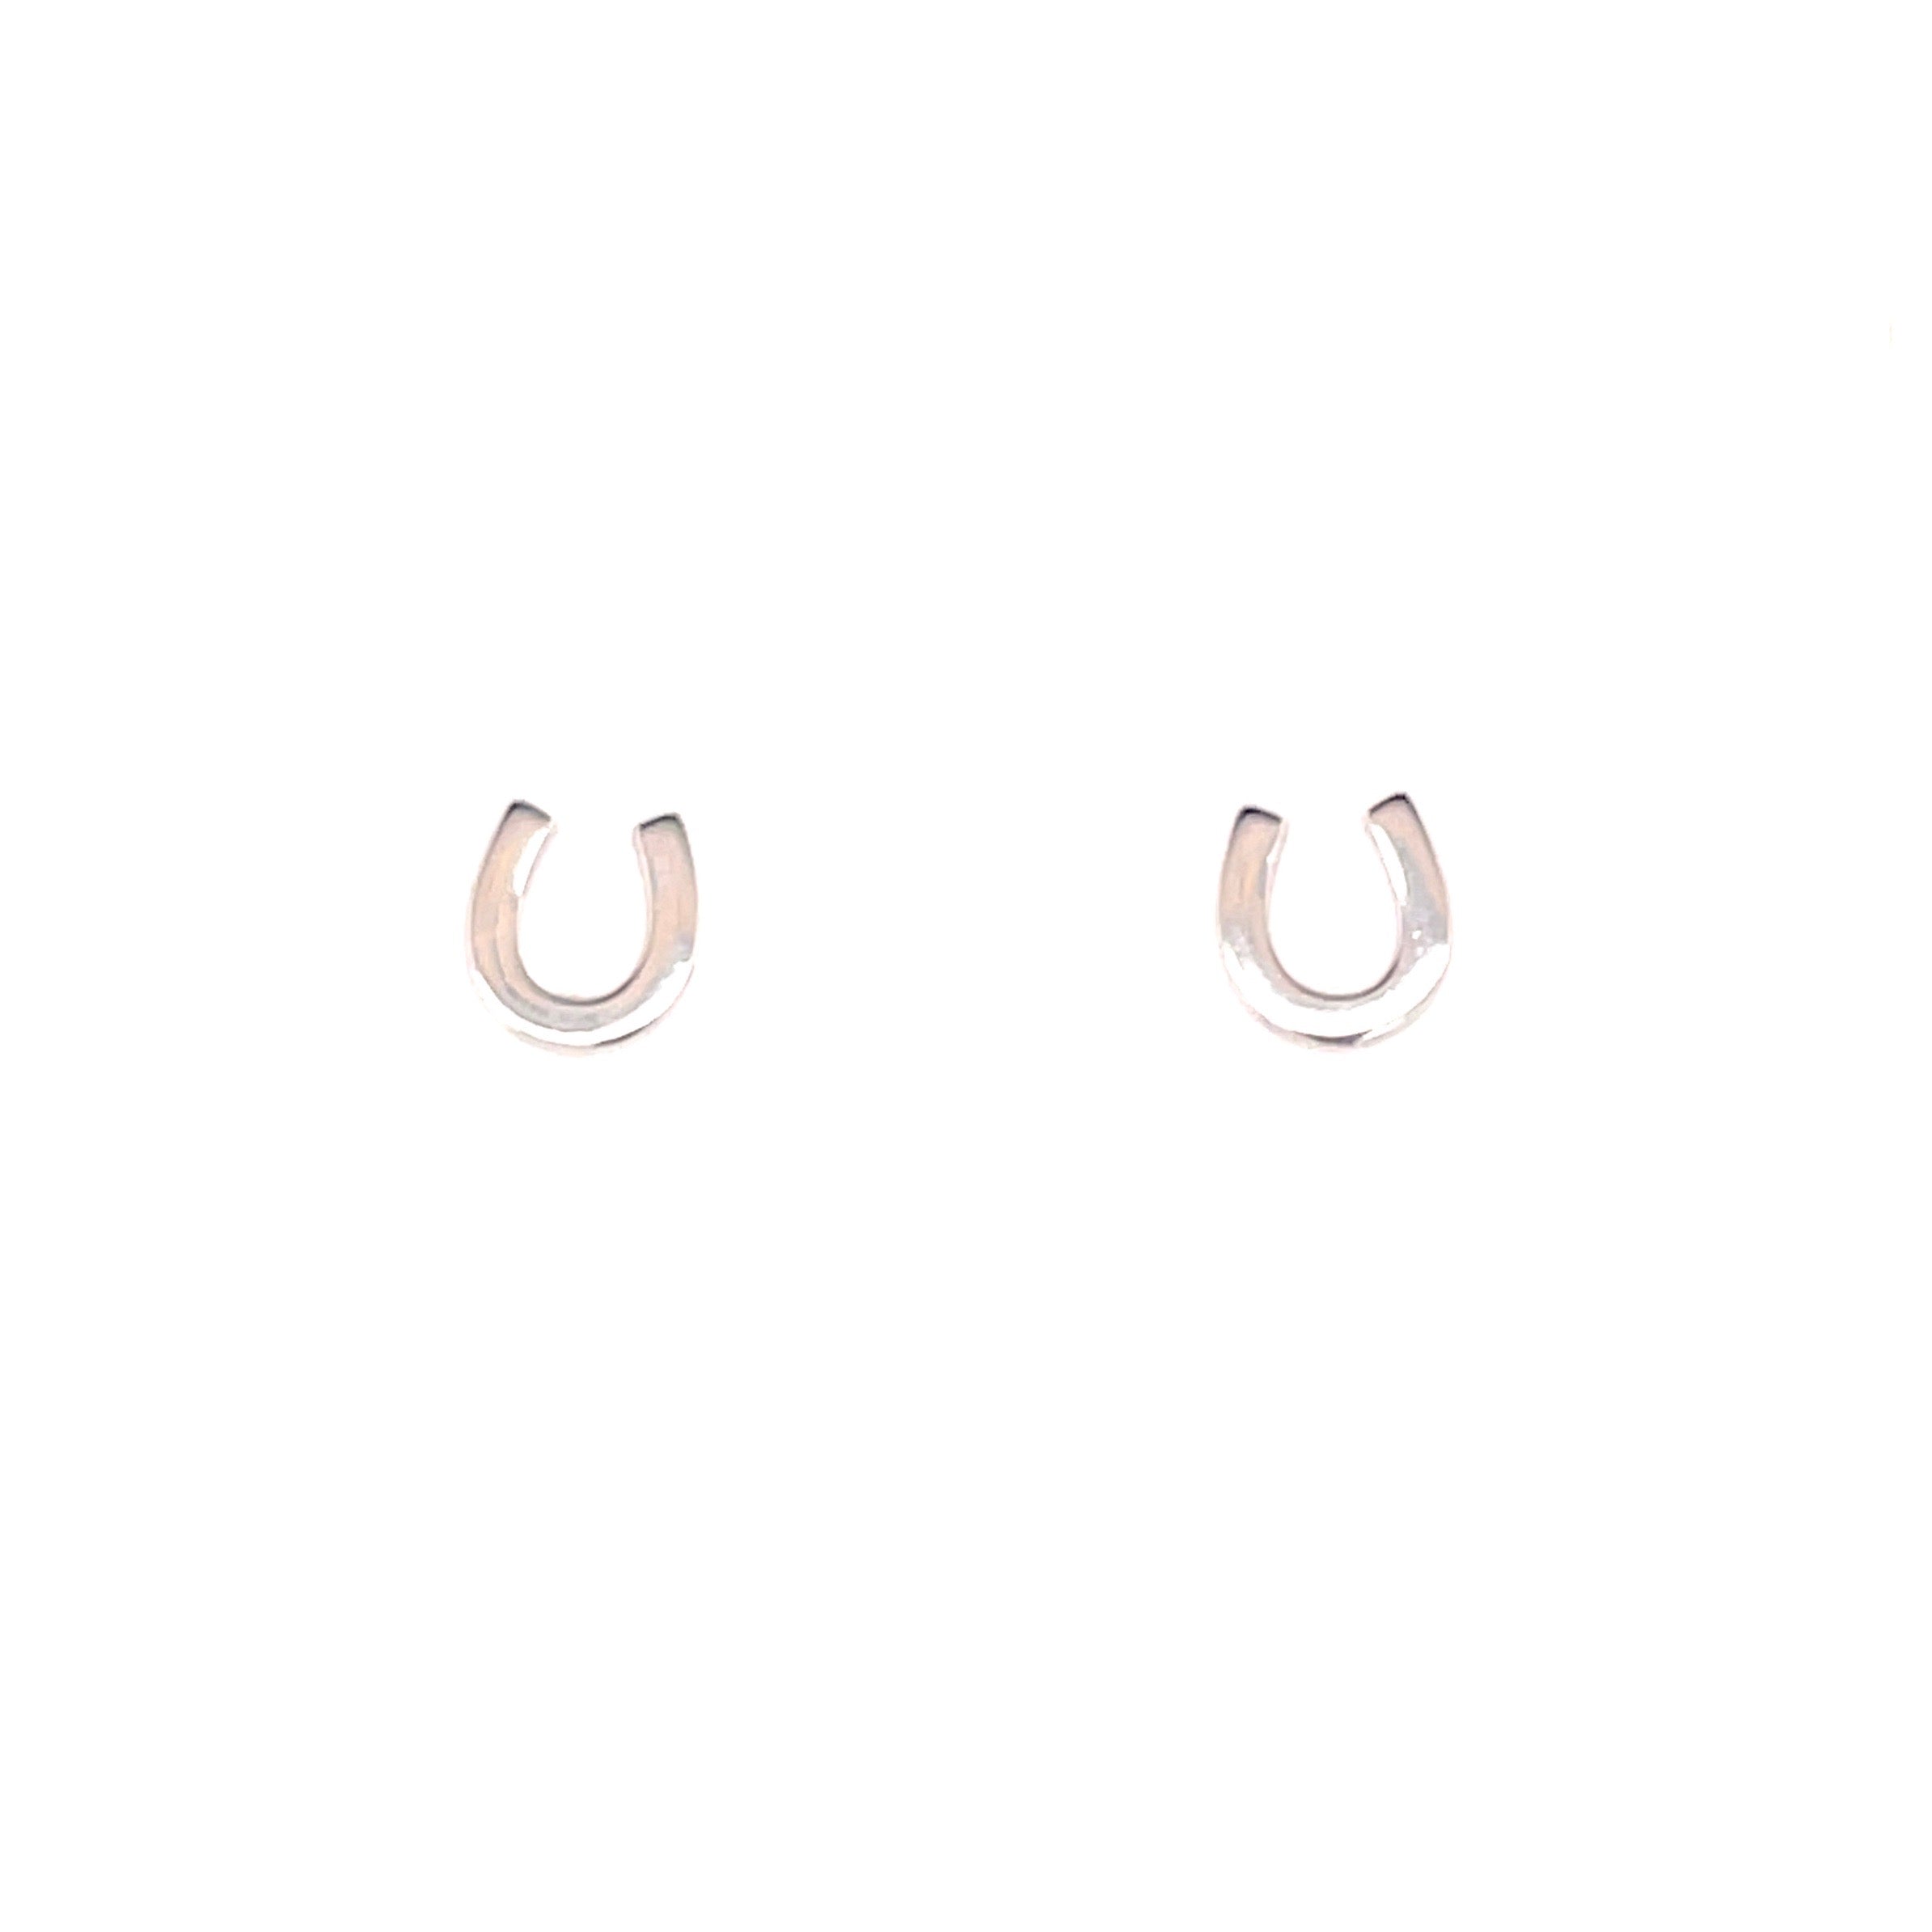 Plain small silver horseshoe earrings